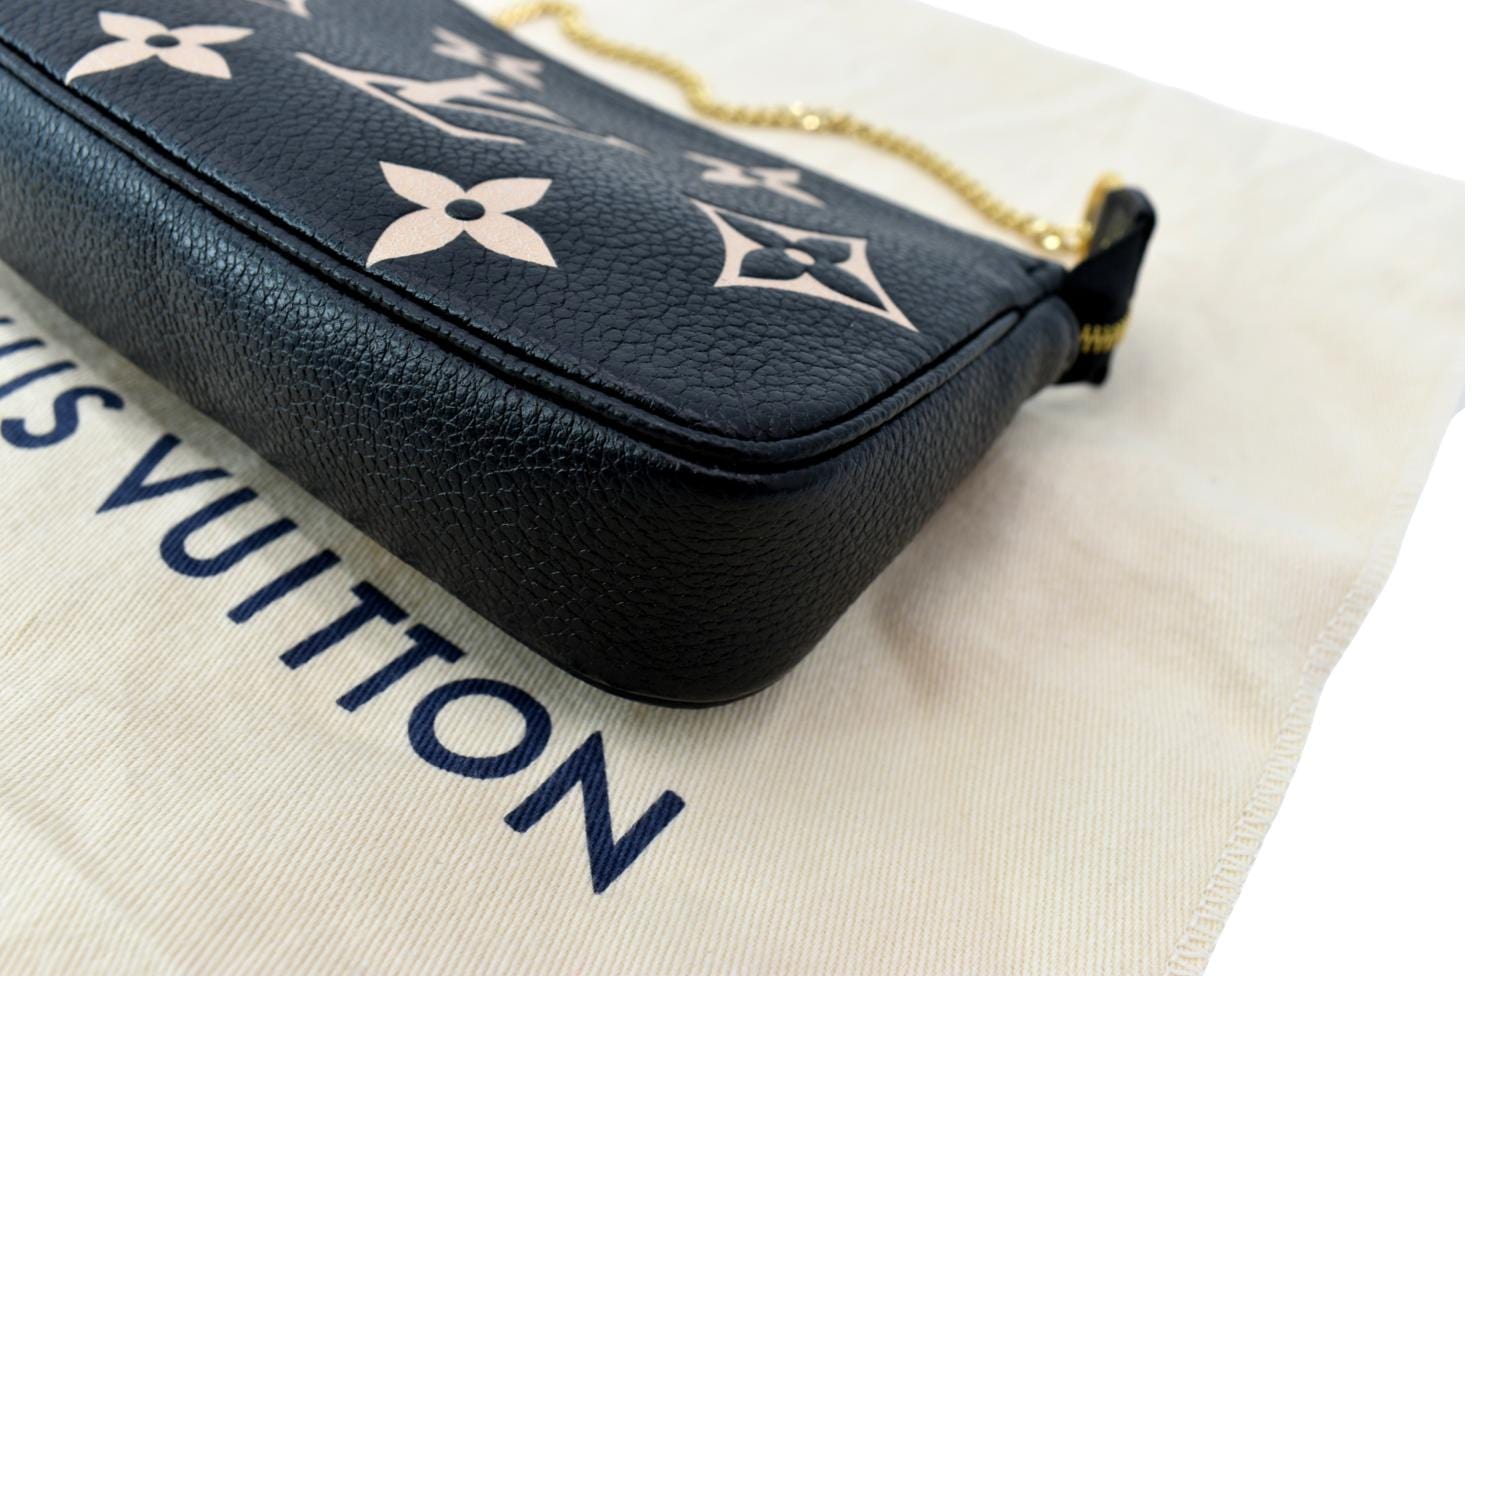 Louis Vuitton Black Monogram Empreinte Leather Mini Pochette Accessoires  Louis Vuitton